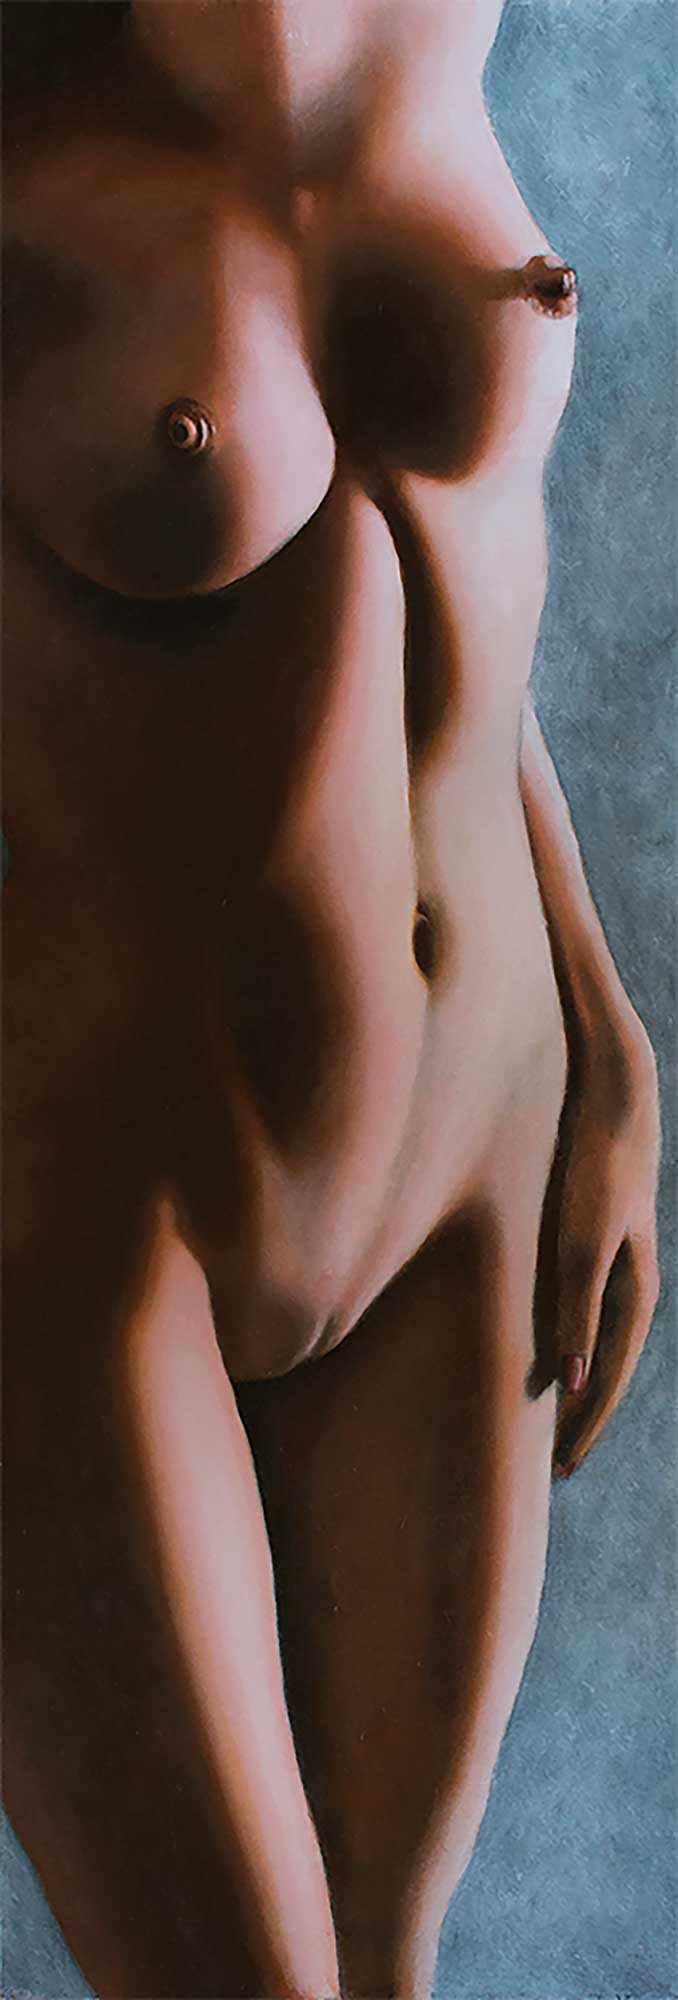 nude art, painting nude, female nude, Edwin IJpeij : fruit defendu forbidden fruit verboden vrucht